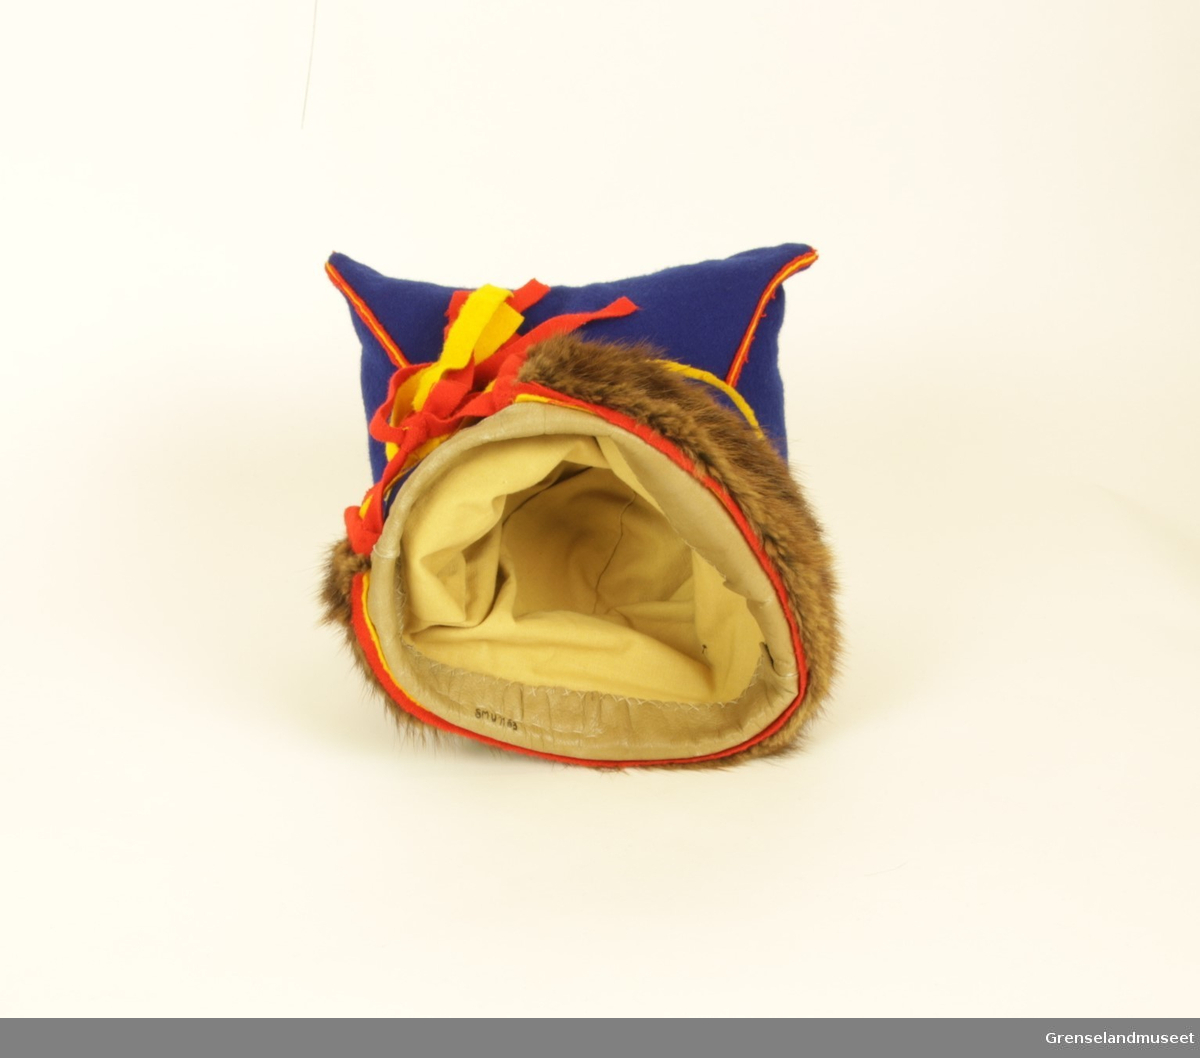 Gjenstanden er samisk firkantlue (herrer) av blått ull og med brun pelskant. På luens innside er kanten som går rundt hodet lagd av skinn. Luens sømmer er av rød og gul ull, og bandene bak i nakken er rød øverst, gul i midten, og rød nederst. Luens firkantete fasong kommer av at hver ende av firkanten er stappet med stoff.       